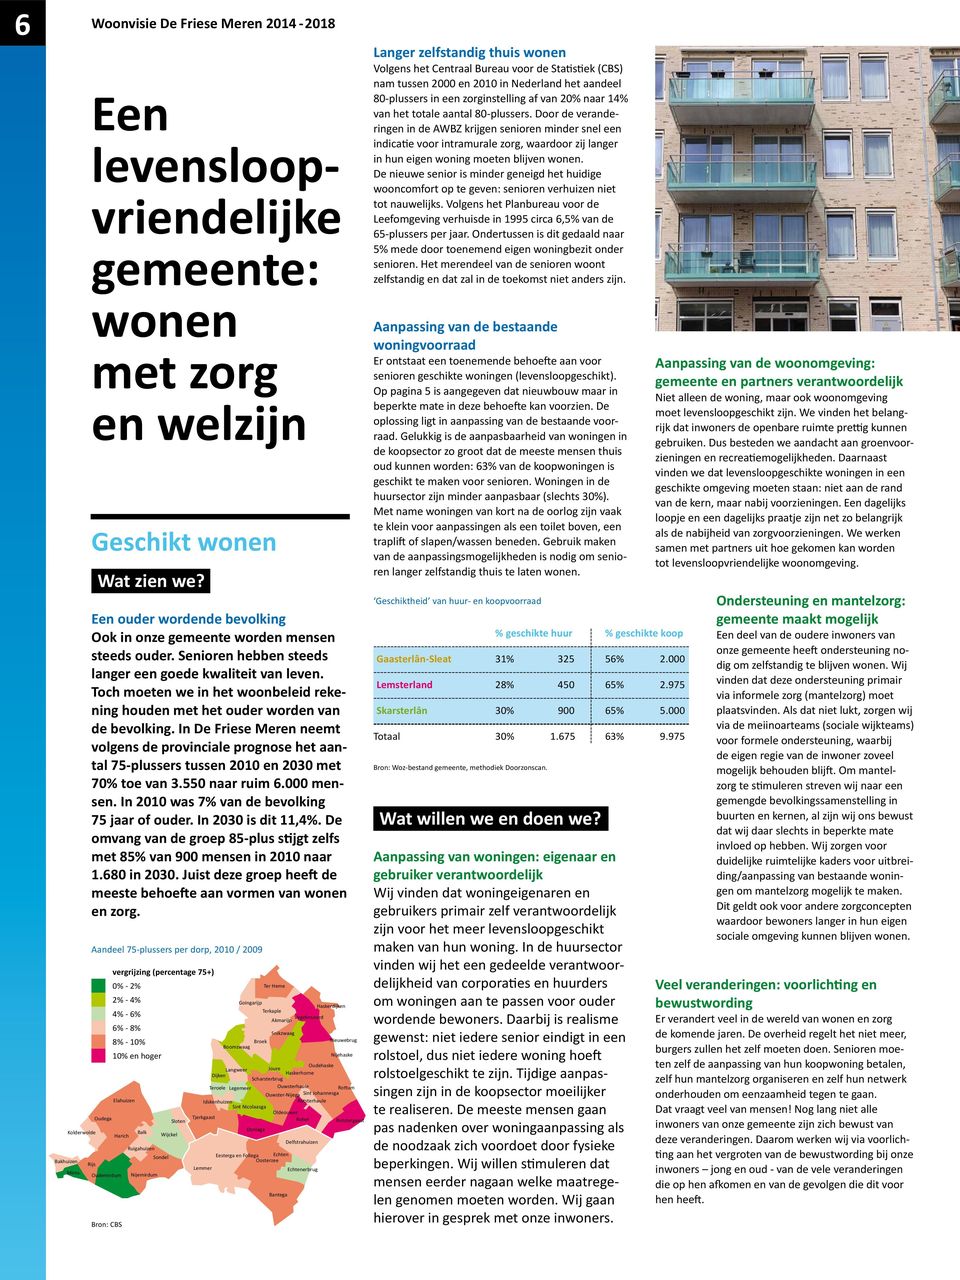 In De Friese Meren neemt volgens de provinciale prognose het aantal 75-plussers tussen 21 en 23 met 7% toe van 3.55 naar ruim 6. mensen. In 21 was 7% van de bevolking 75 jaar of ouder.